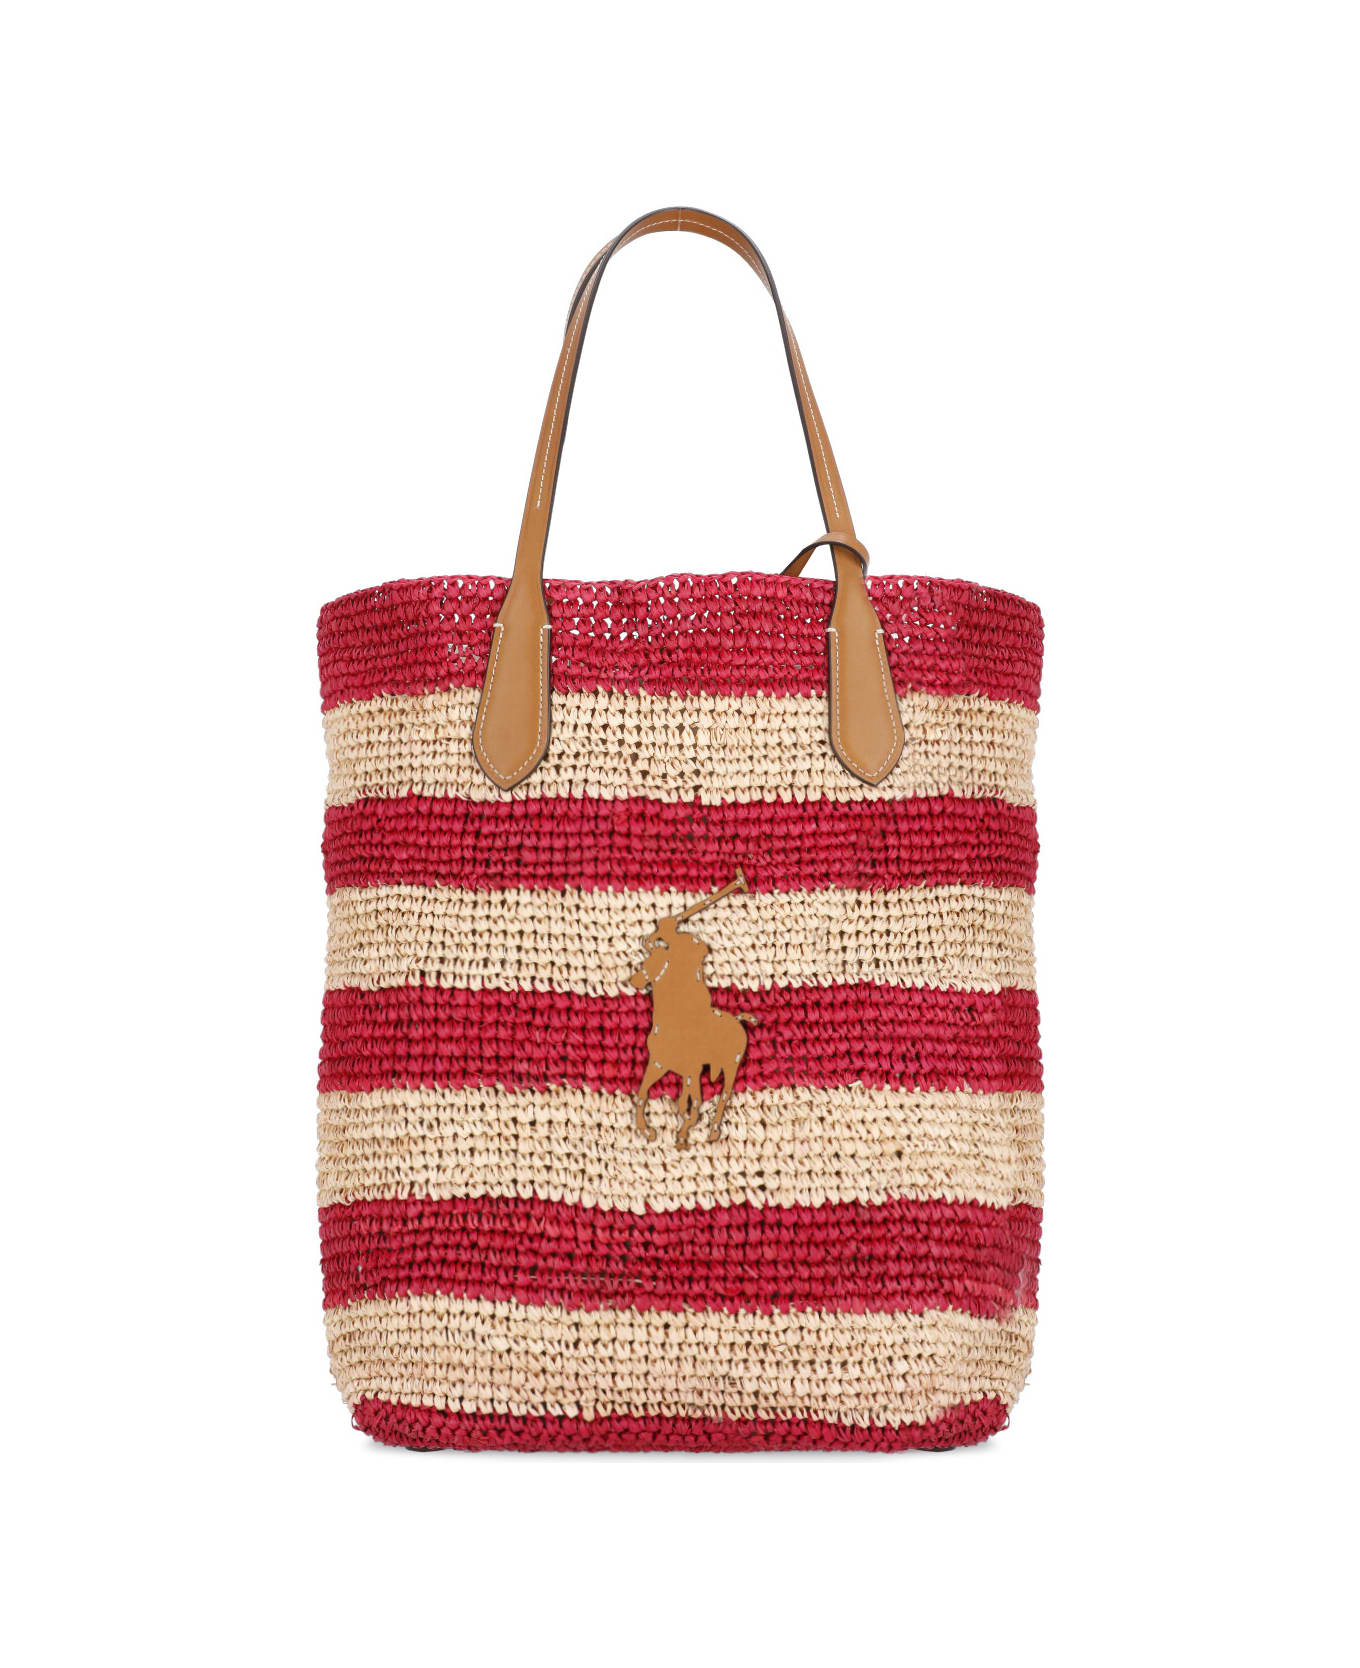 Ralph Lauren Pony Shopping Bag - Red トートバッグ